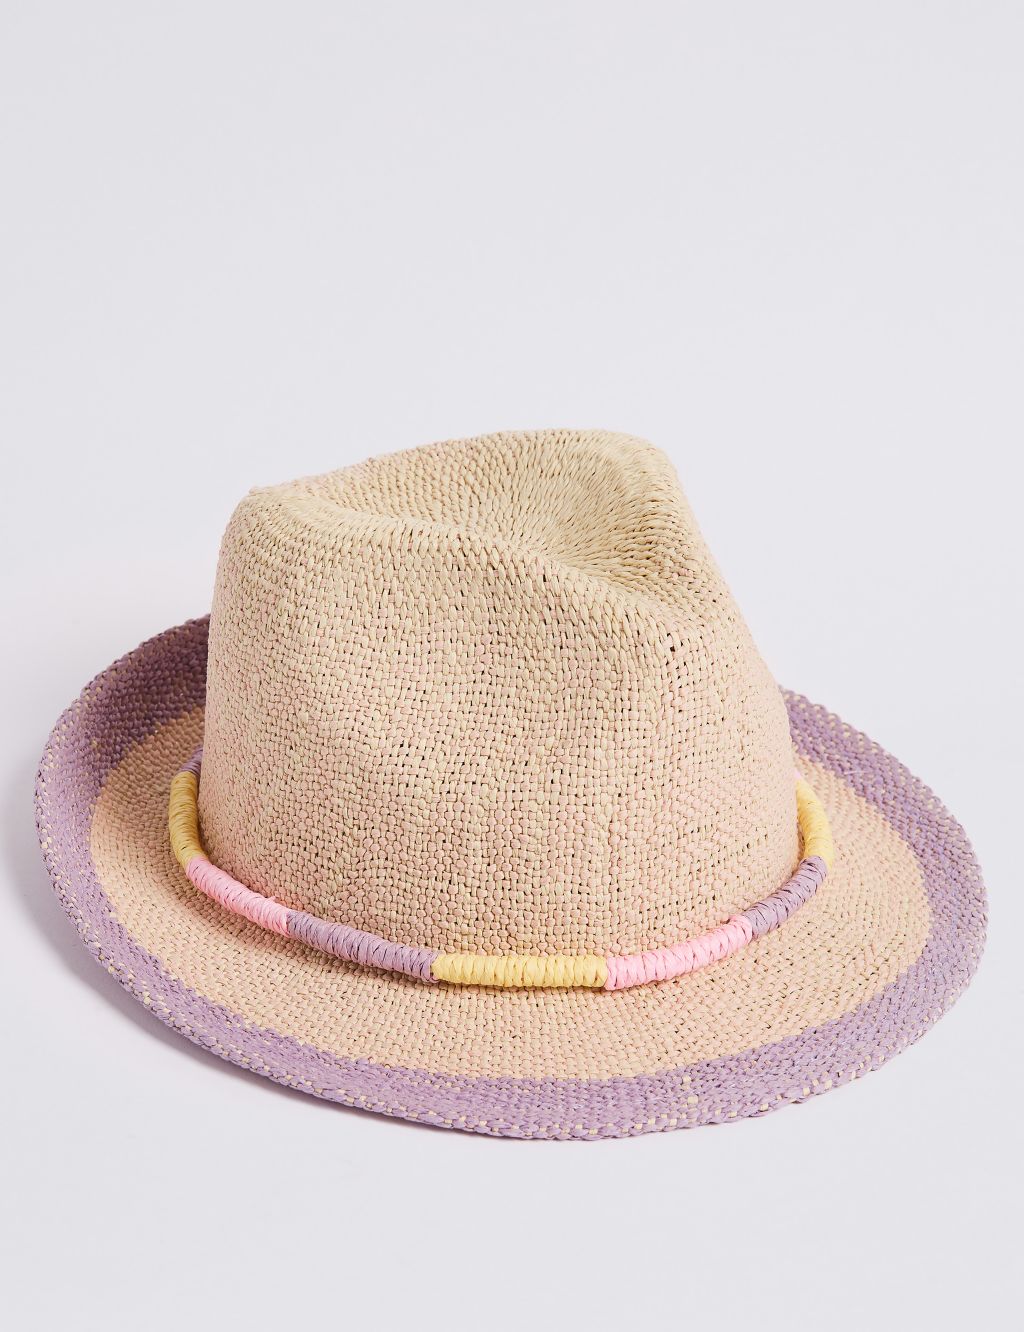 Kids’ Straw Summer Hat (6 Months - 6 Years) 3 of 4